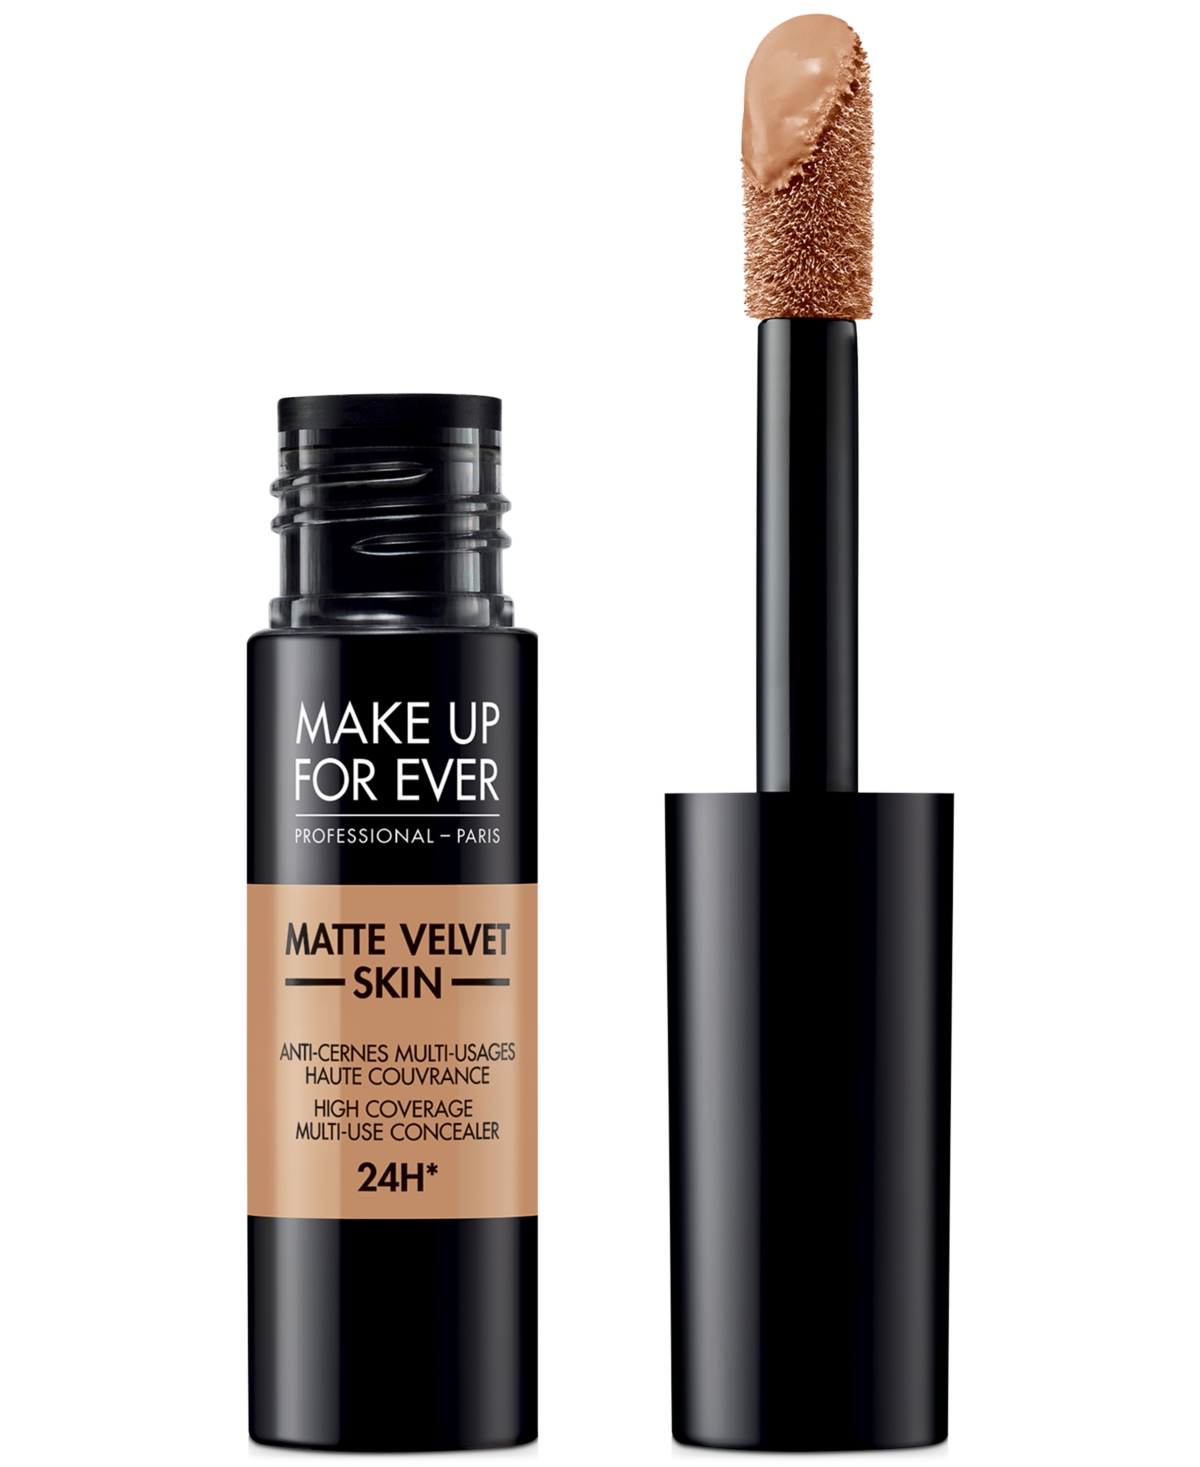 Make Up For Ever Matte Velvet Skin High Coverage Multi-Use Concealer - . - Soft Sand